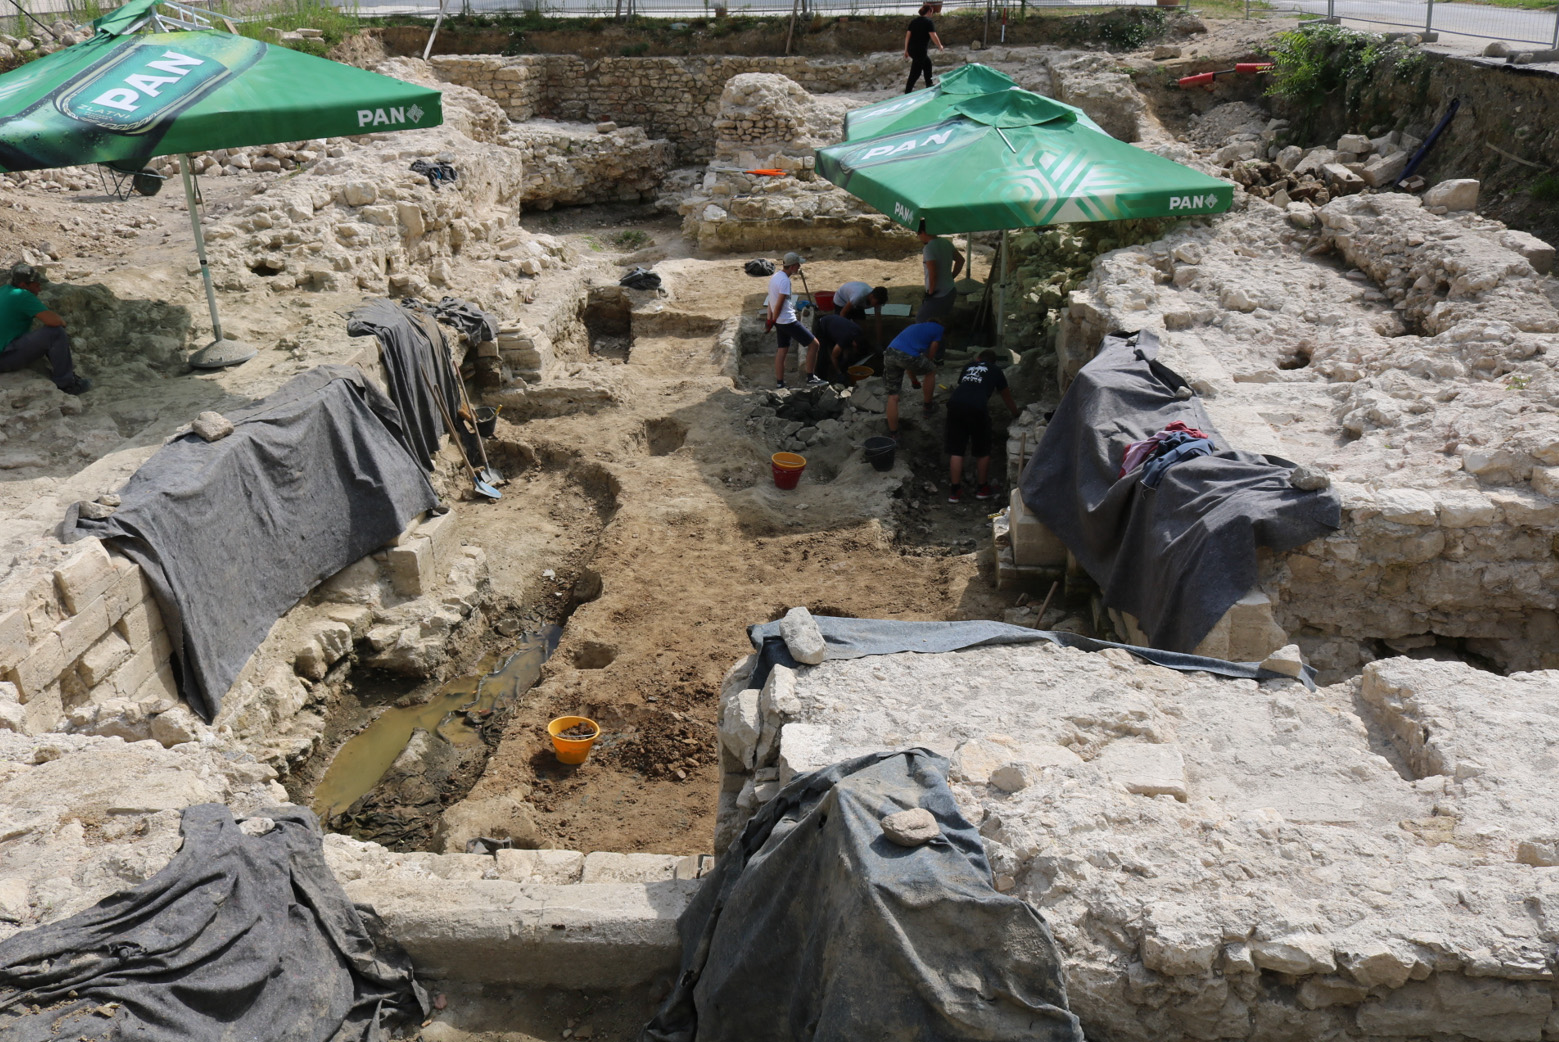 ARHEOLOŠKA ISTRAŽIVANJA Prezentacija rezultata i vizije arheološkog parka